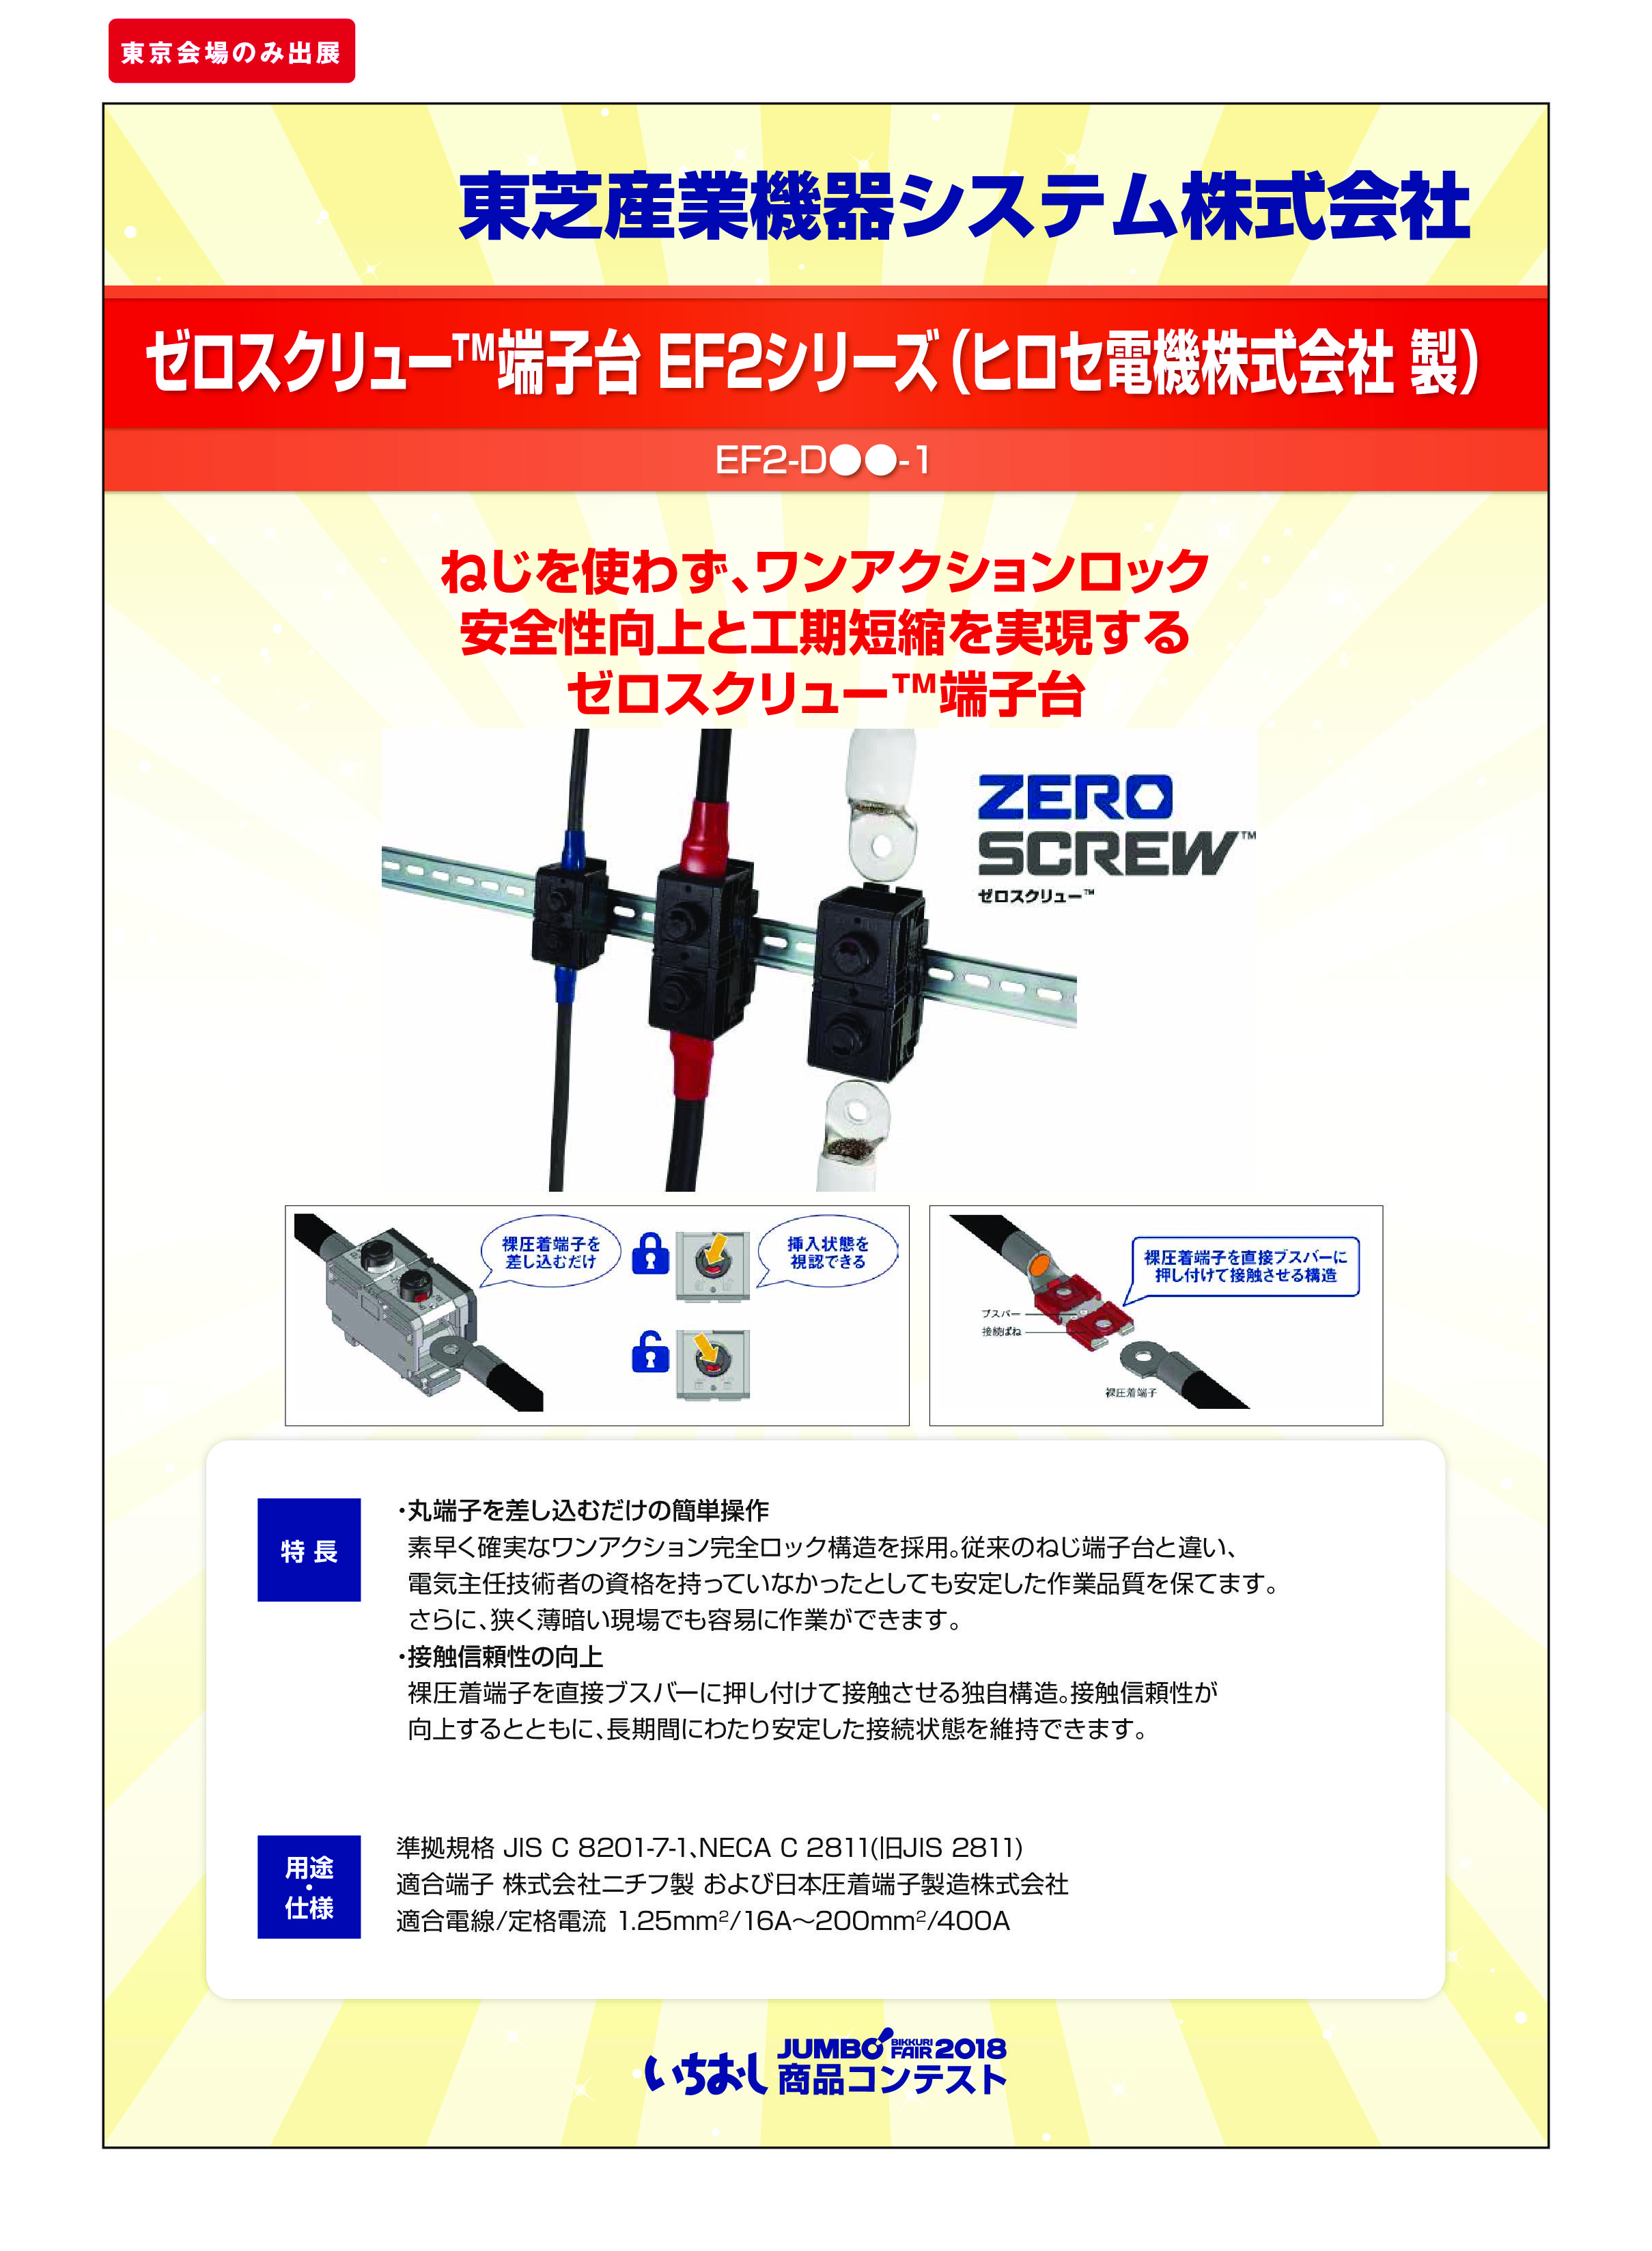 「ゼロスクリュー™端子台 EF2シリーズ（ヒロセ電機株式会社 製）」東芝産業機器システム株式会社の画像